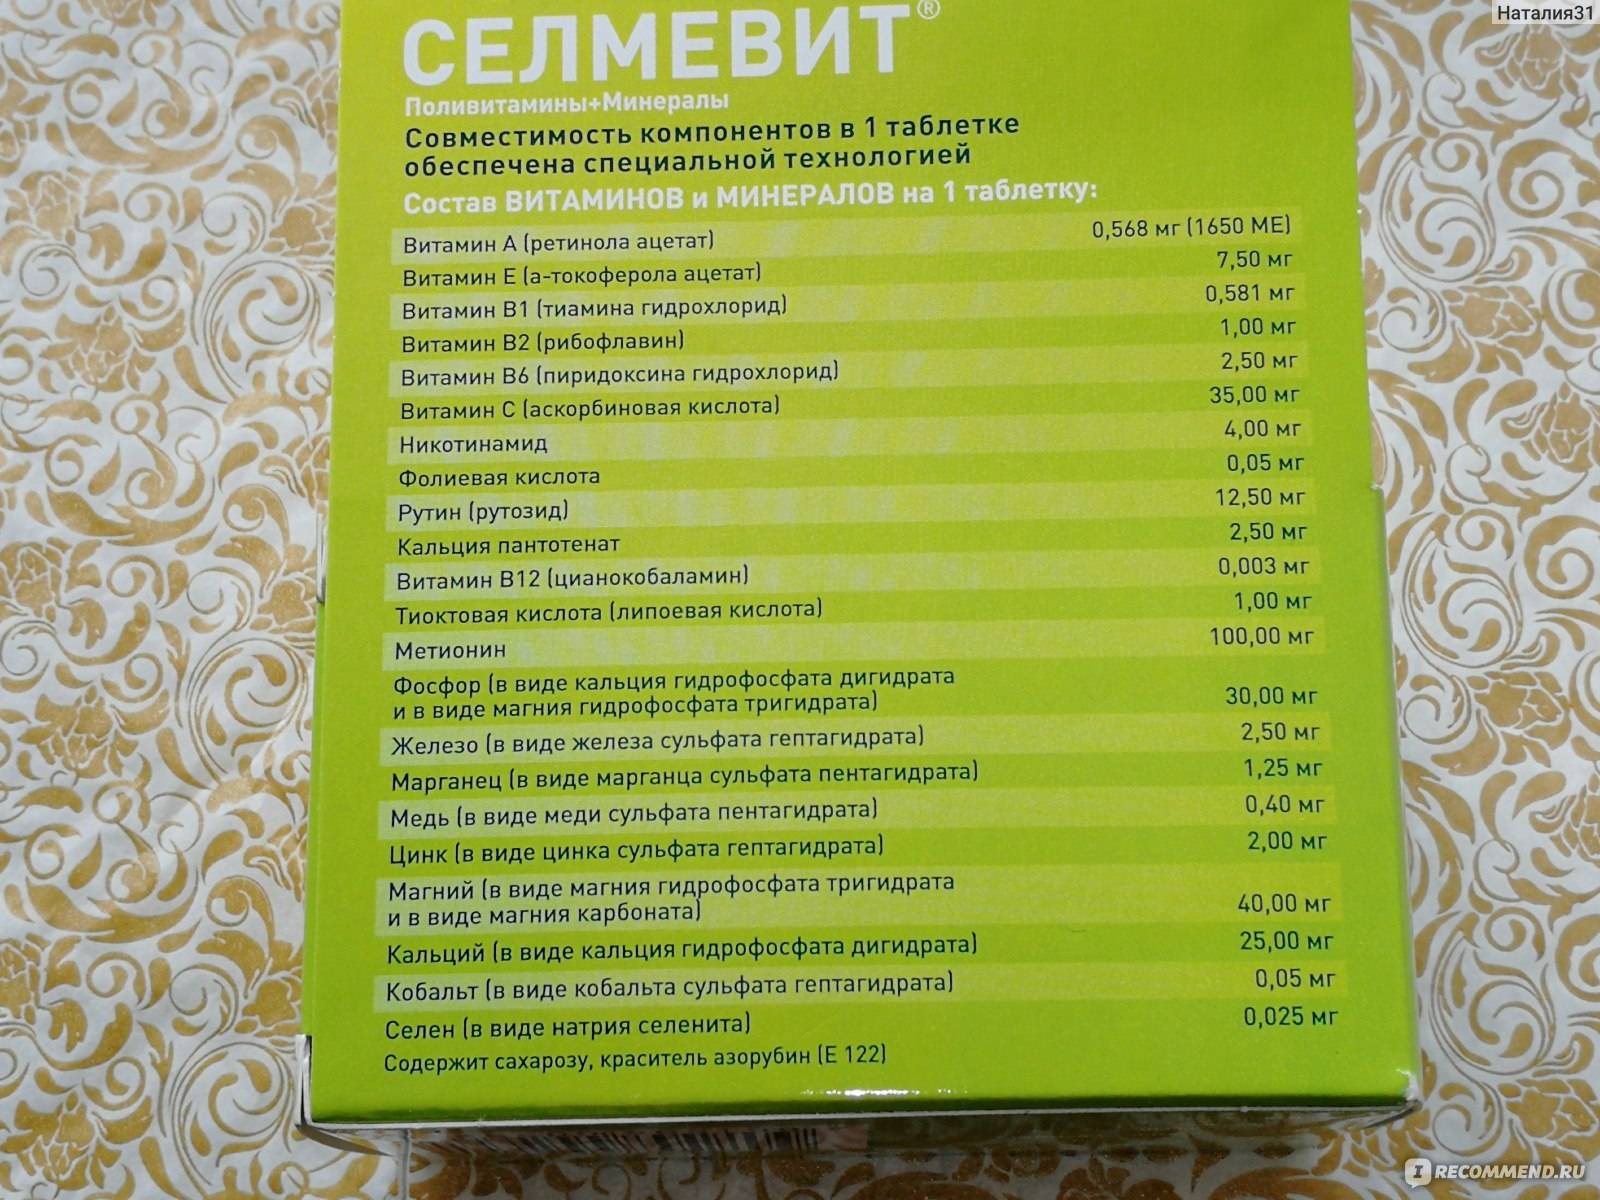 Витаминные комплексы селмевит для мужчин и женщин- поддерживают организм в тонусе – selmevit.ru